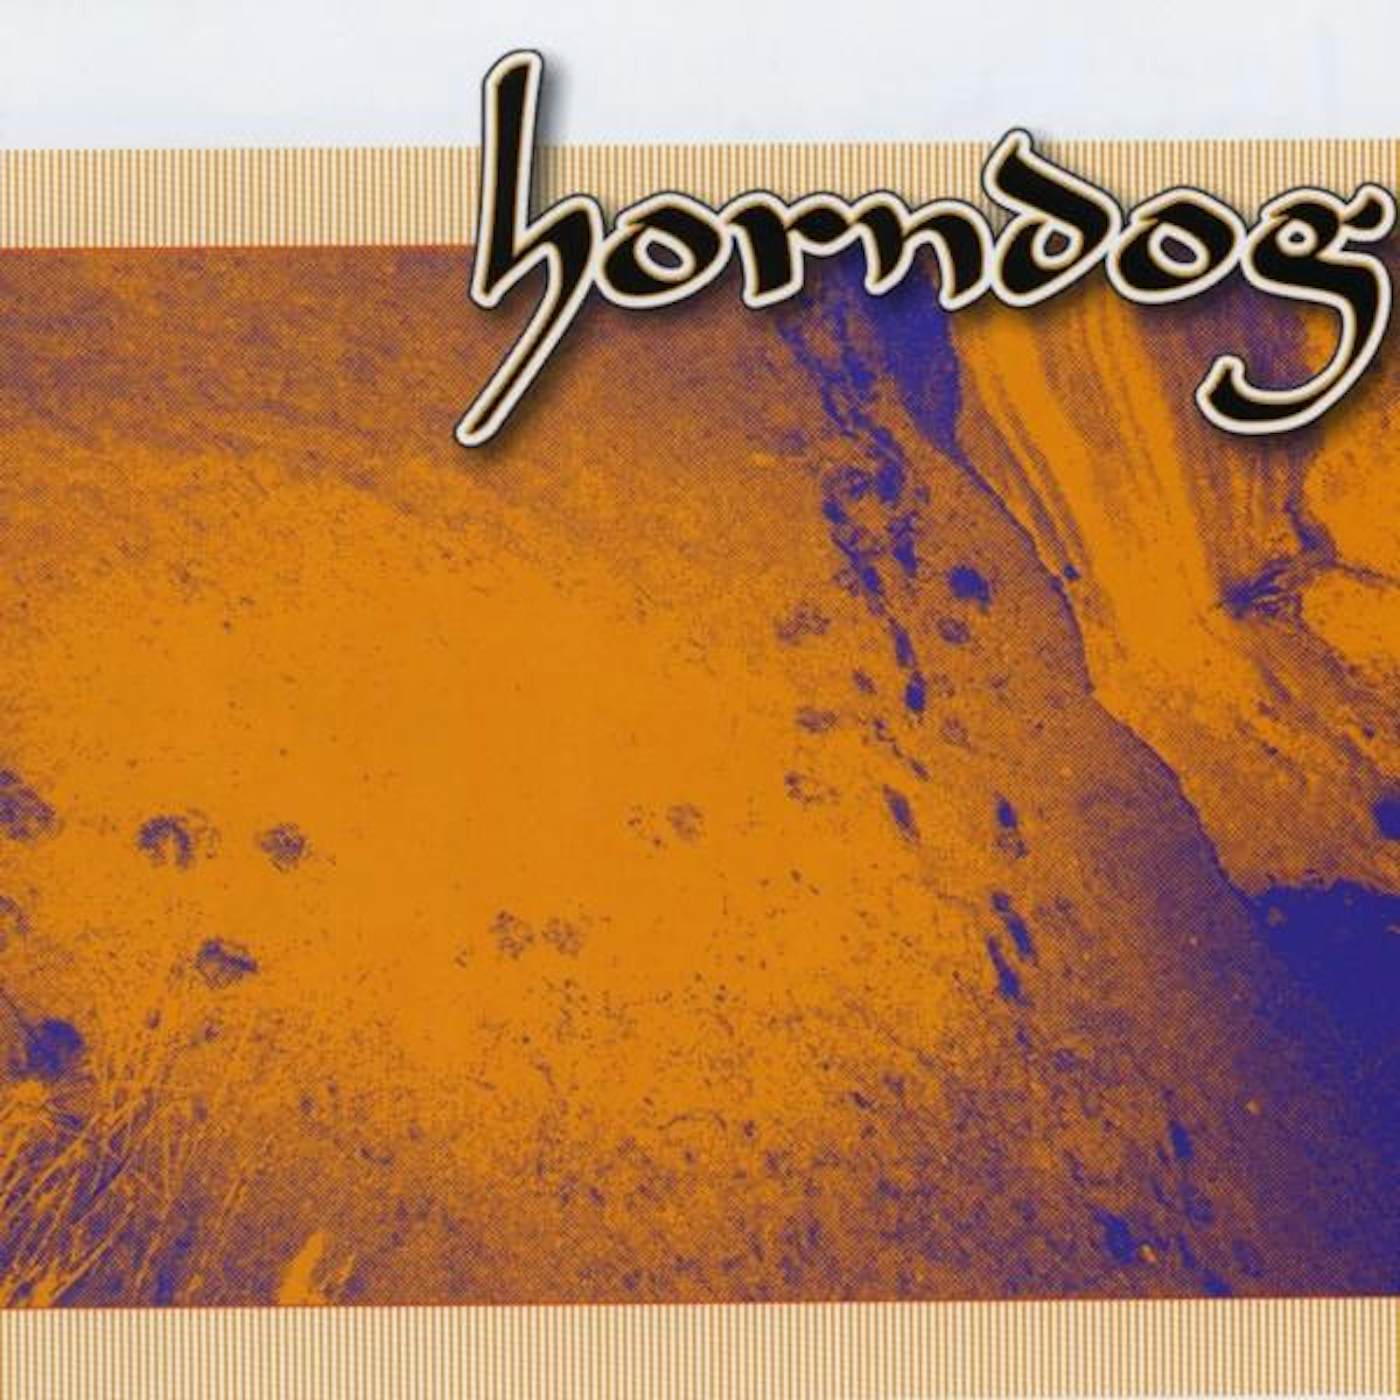 HORNDOG CD